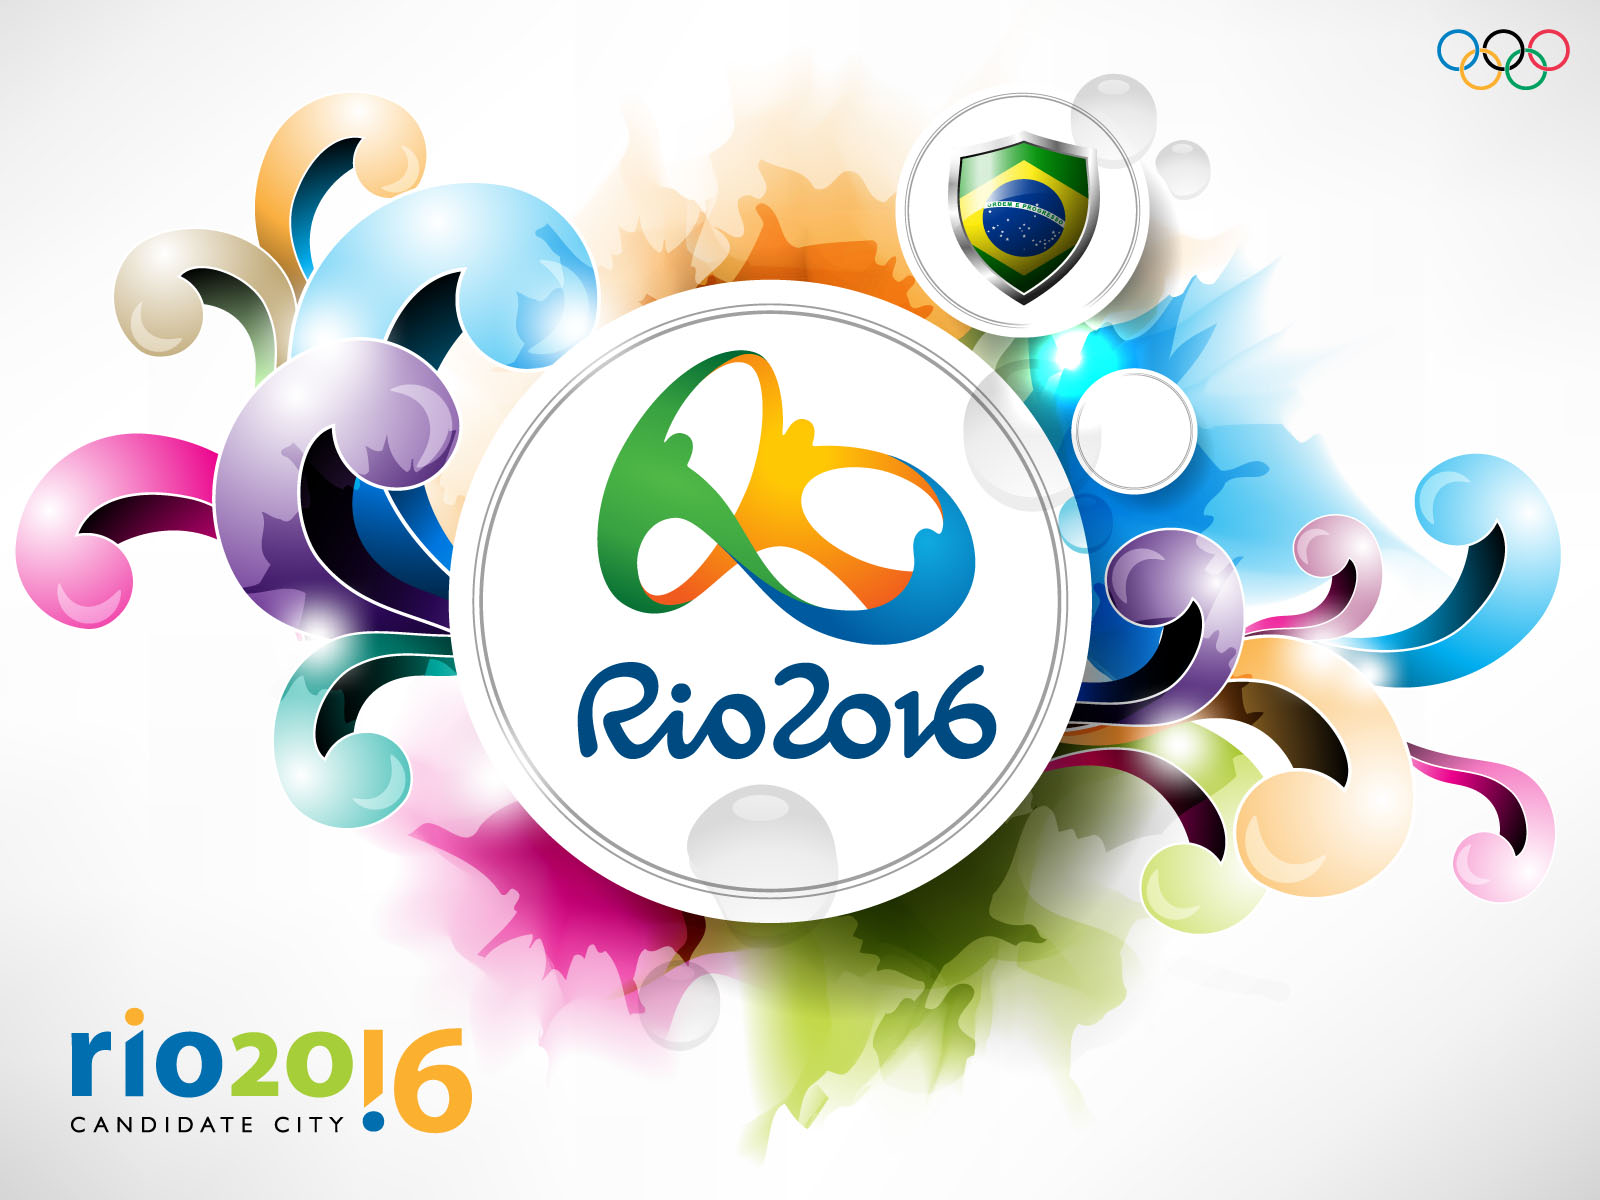 Sportközgazdász: minden idők egyik legproblémásabb olimpiáját tartják